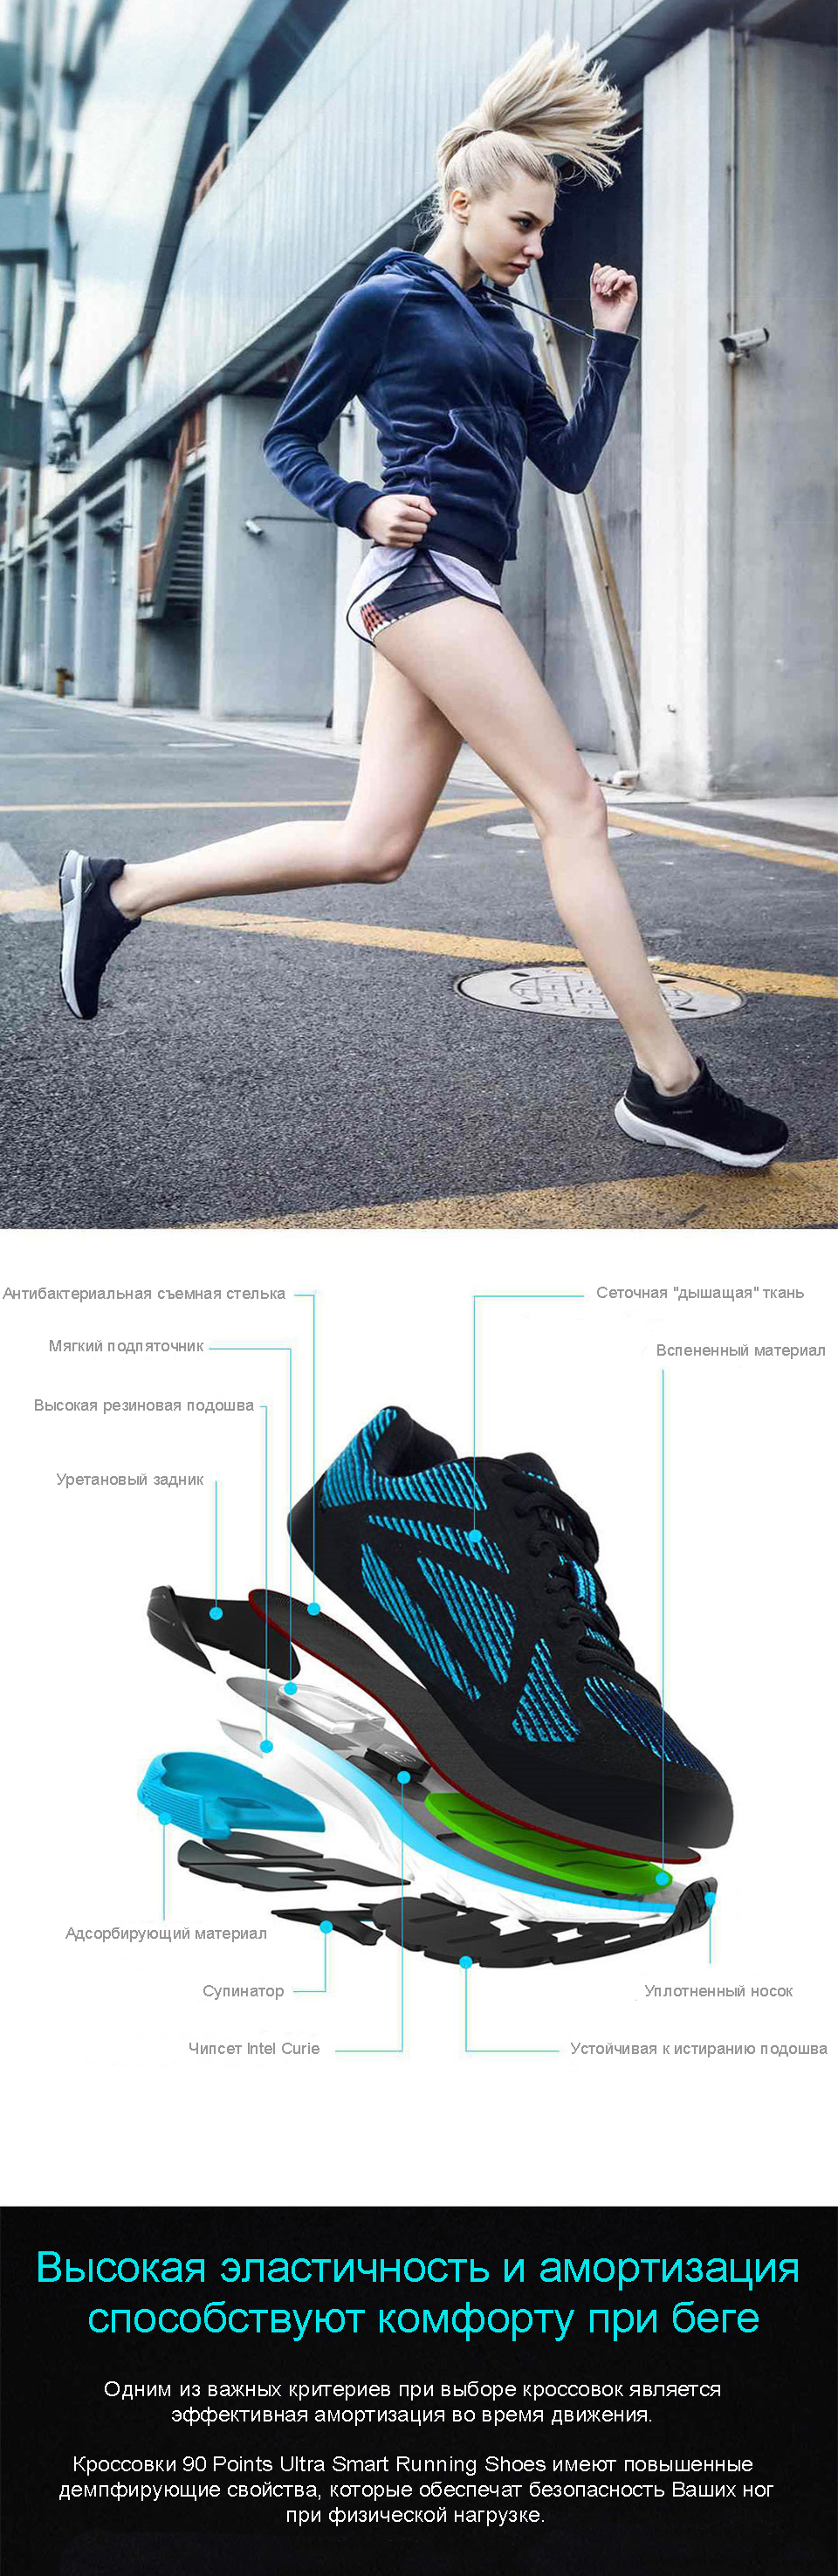 Кроссовки 90 Points Ultra Smart Running Shoes составные части и амортизация